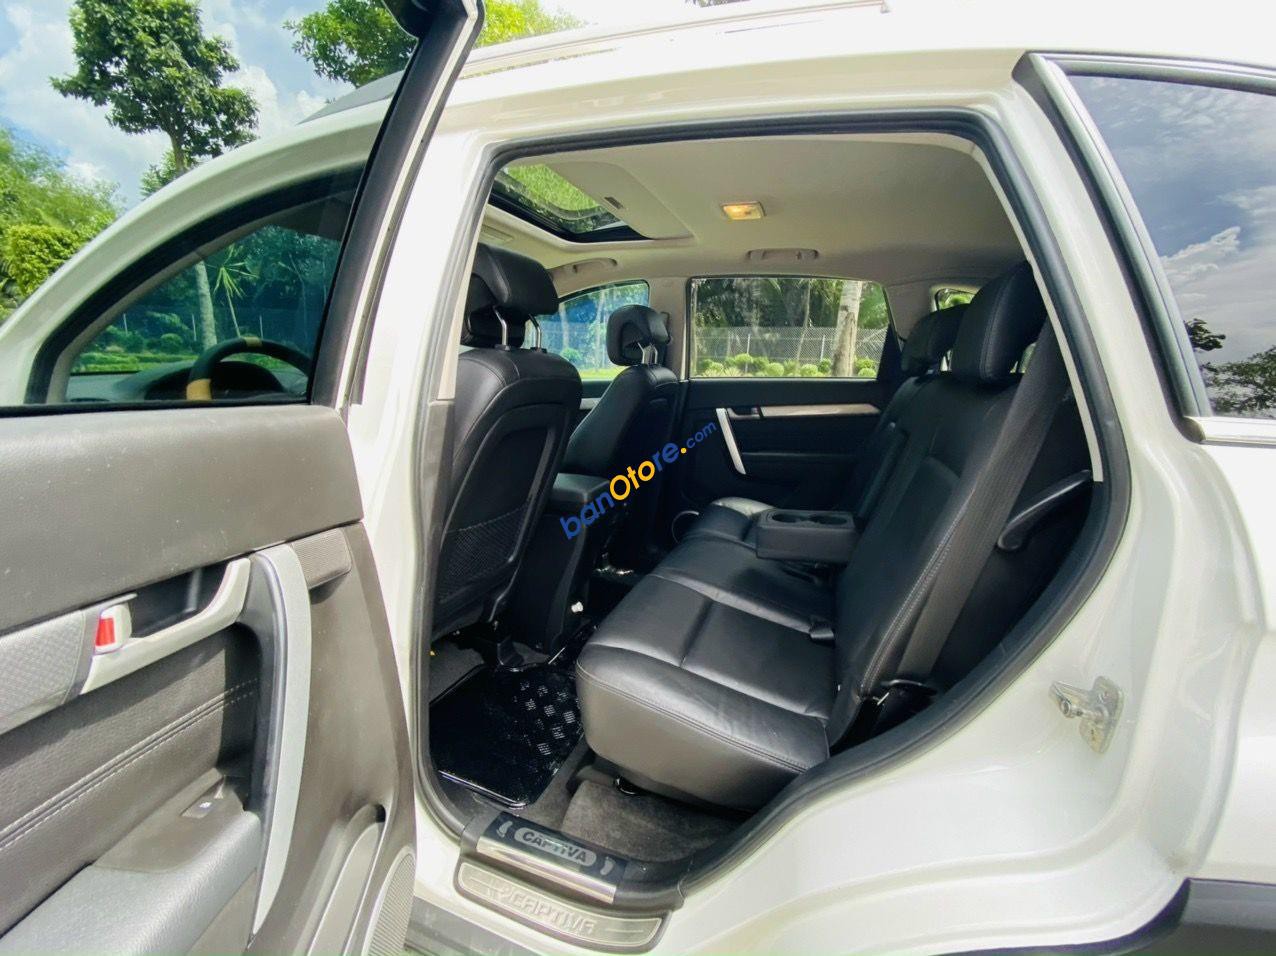 Chevrolet Captiva 2016 - AT full option - Bản cao cấp nhất xe cực đẹp